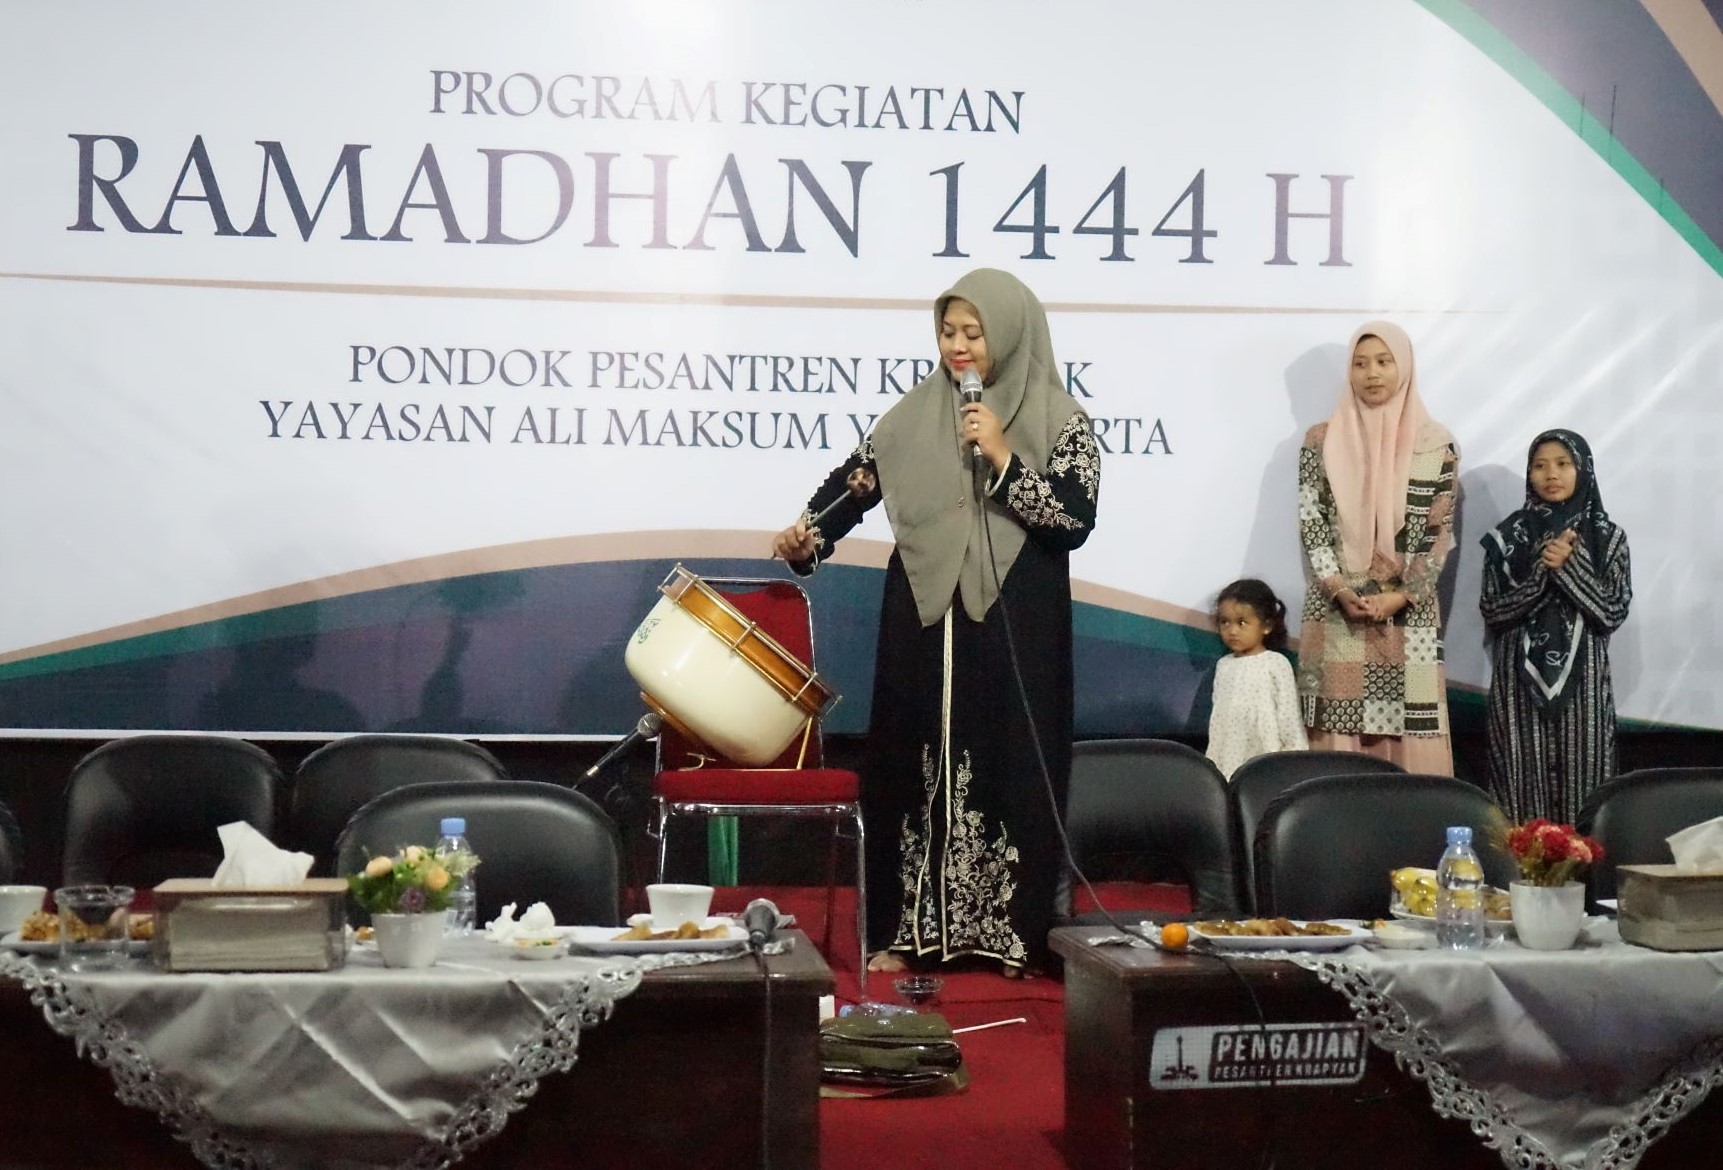 Ibu Nyai Hj Maya Fitria meresmikan pembukaan Program Kegiatan Ramadhan Pondok Pesantren Krapyak Yayasan Ali Maksum dengan pemukulan bass.